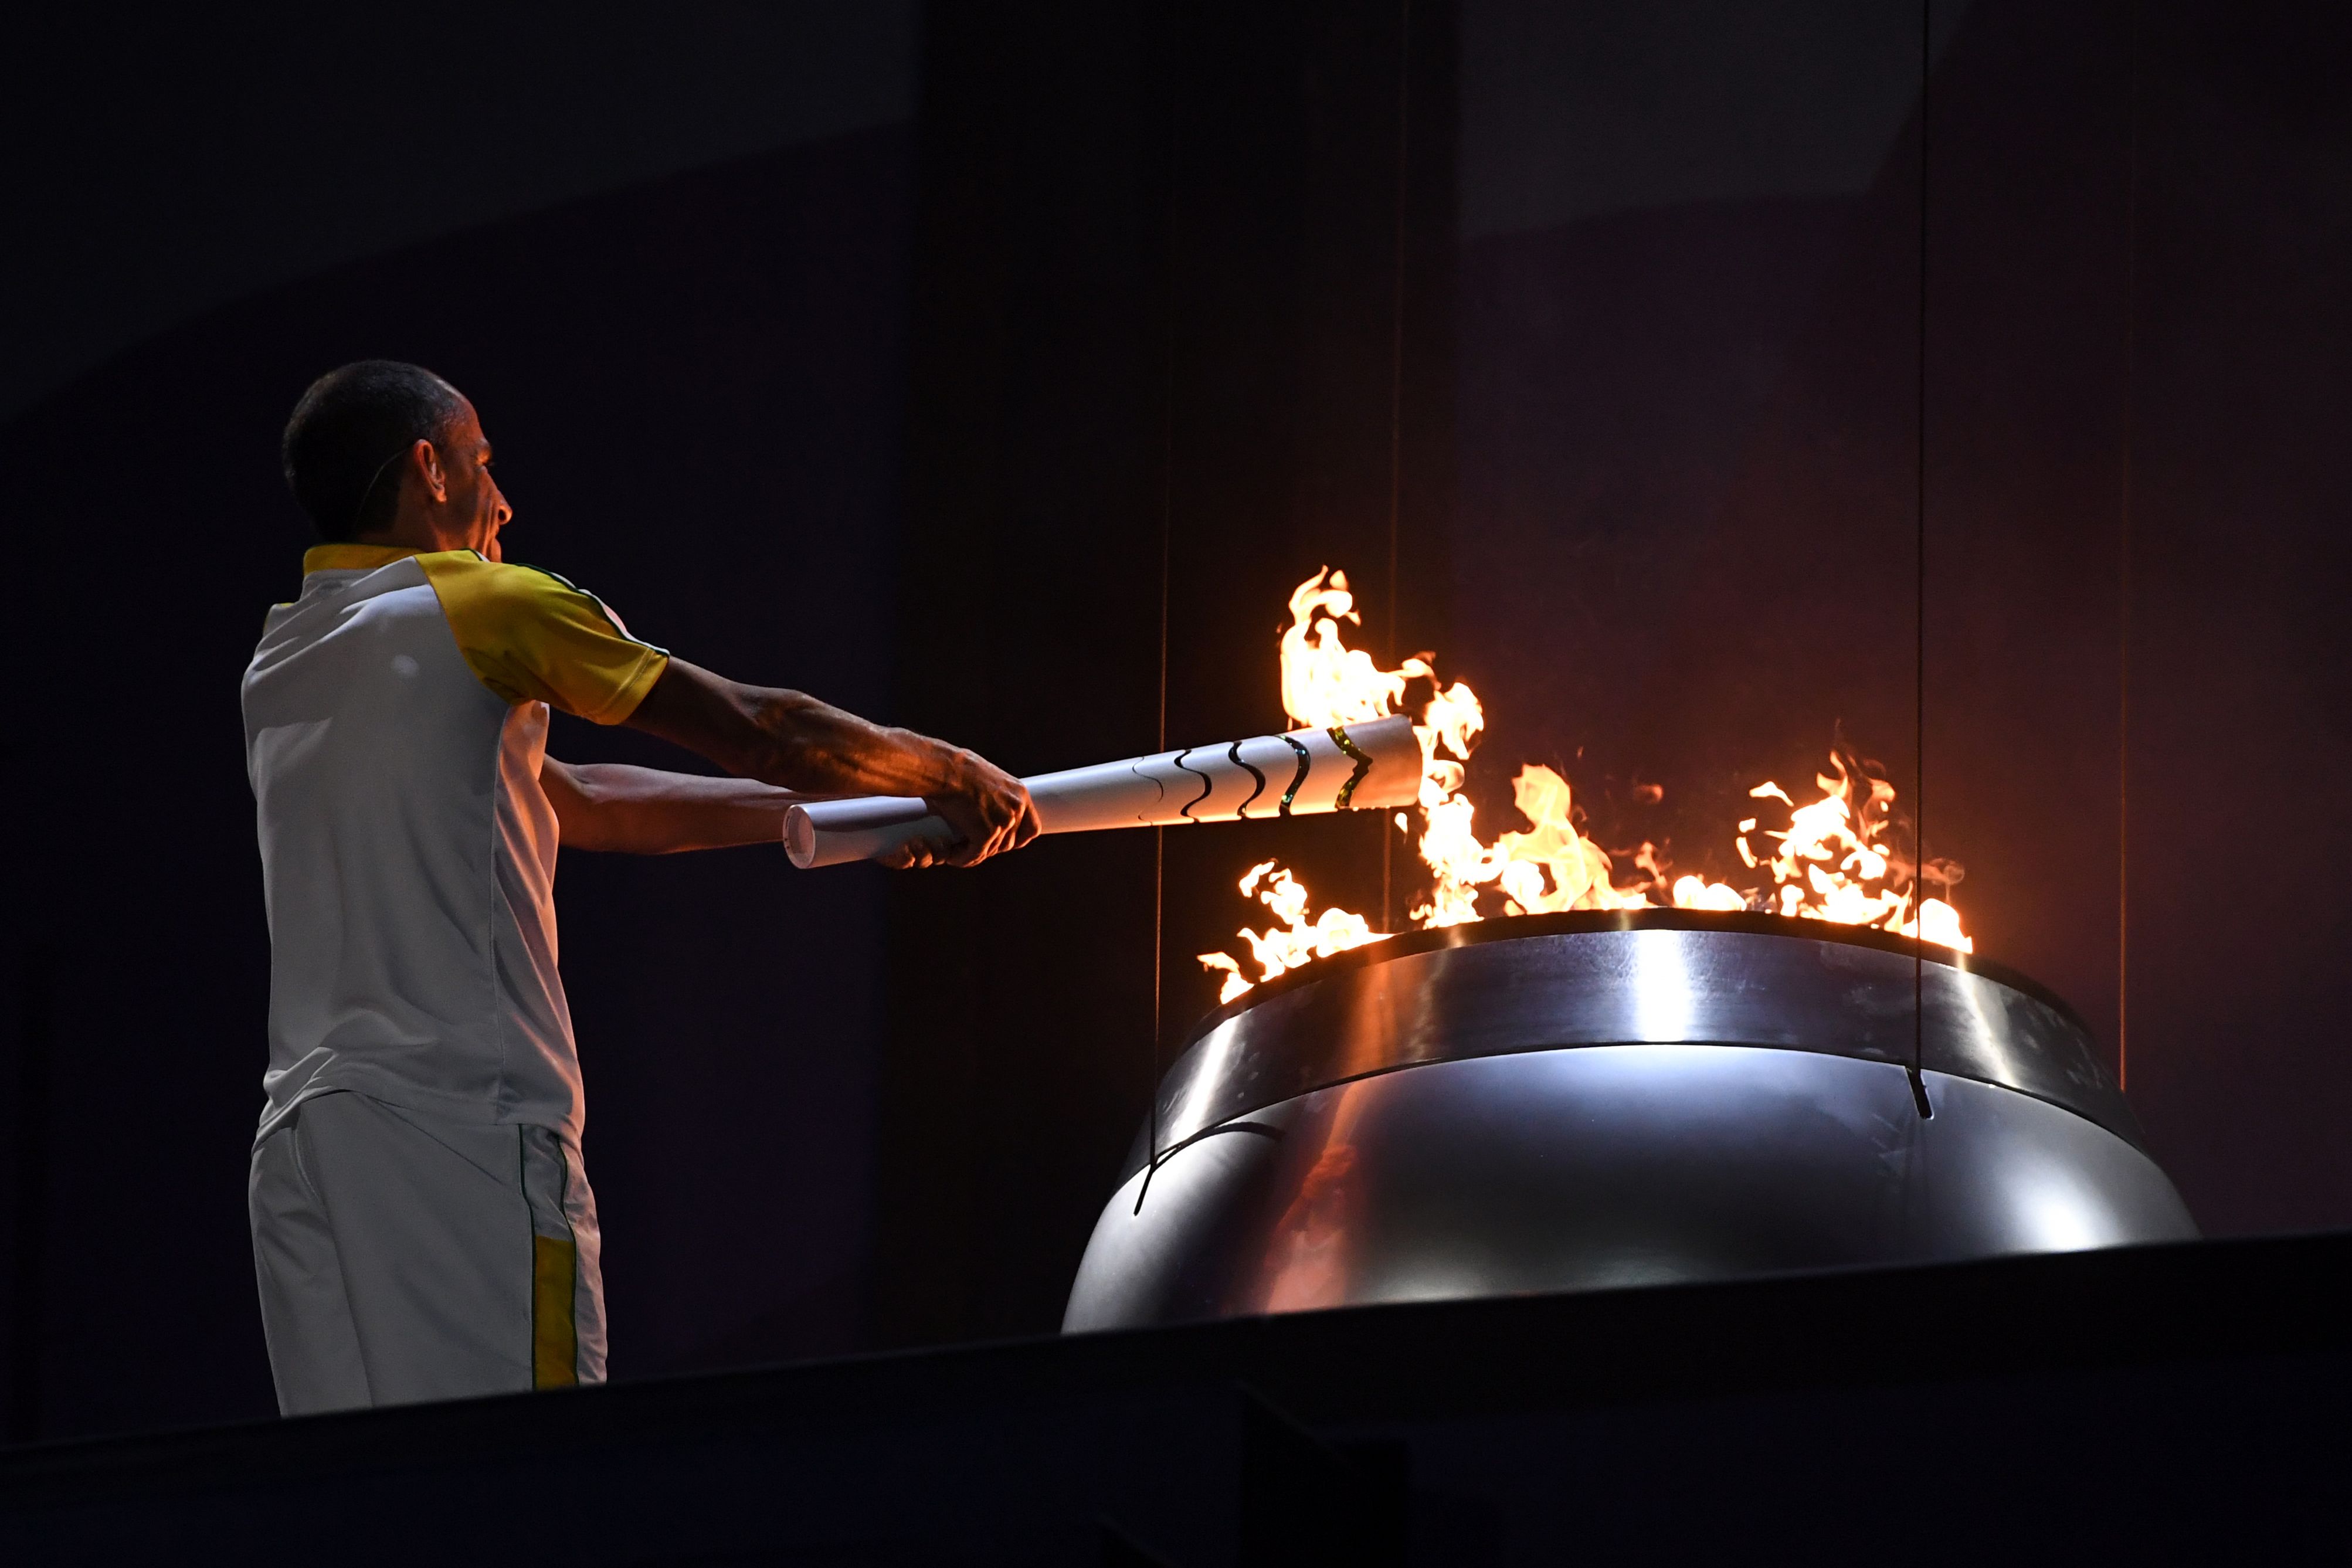 Факел современные игры зажигается. Факел олимпийского огня Олимпийских игр зажигается. Зажжение олимпийского огня 2016. Олимпийские игры в Рио де Жанейро 2016 Олимпийский огонь. Олимпийских игр 2016 года в Рио-де-Жанейро зажжение огня.